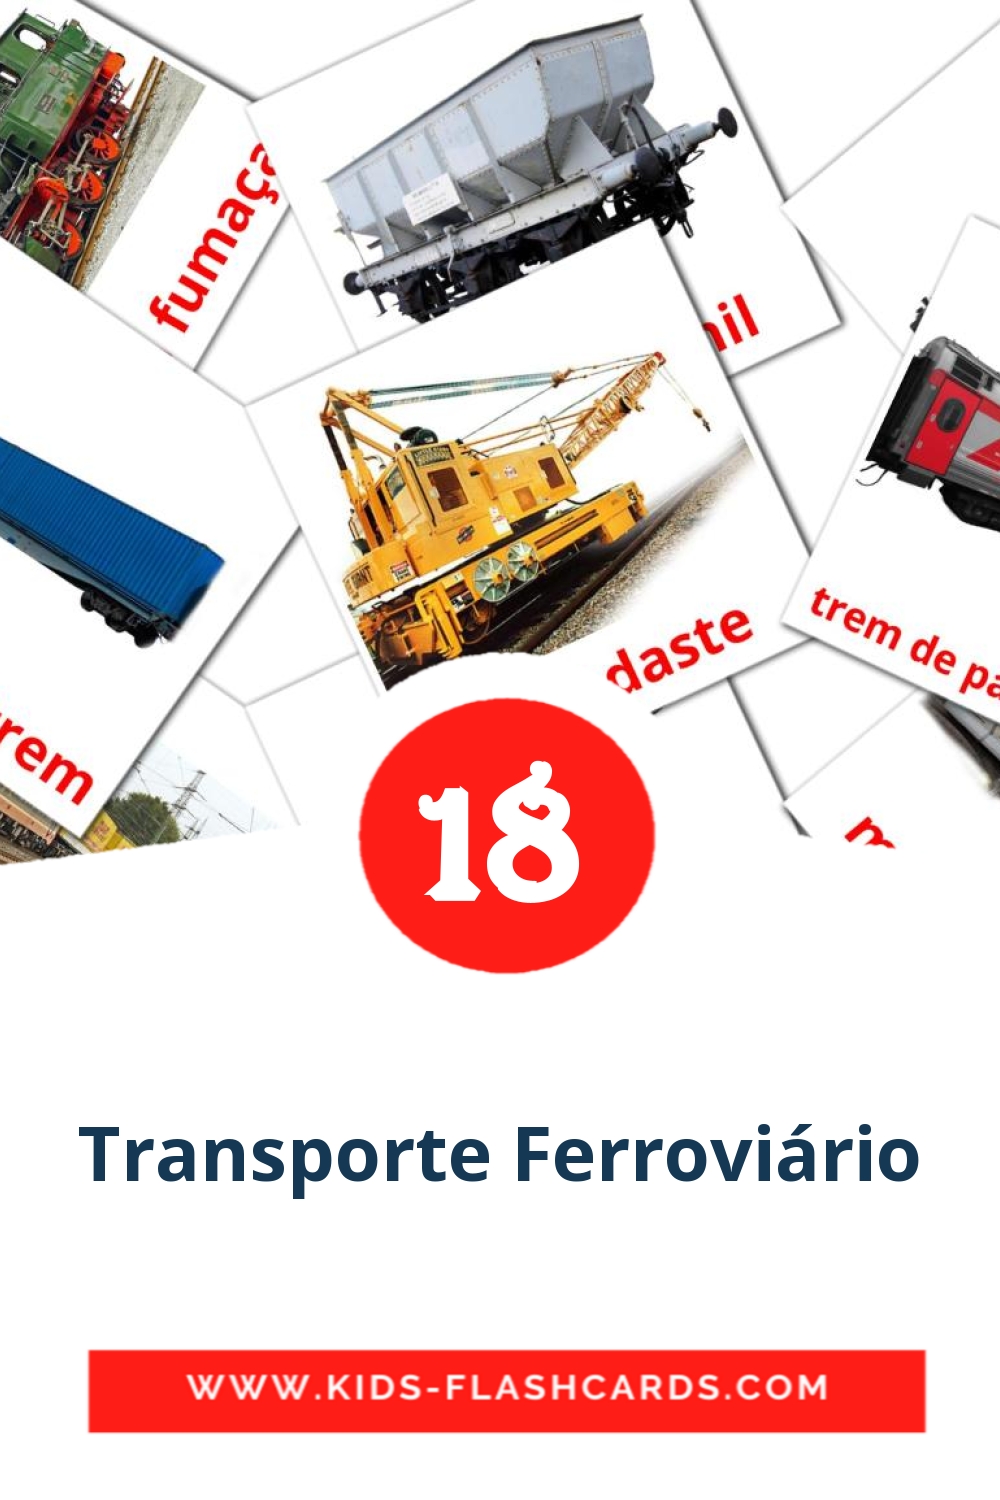 Transporte Ferroviário на португальском для Детского Сада (18 карточек)